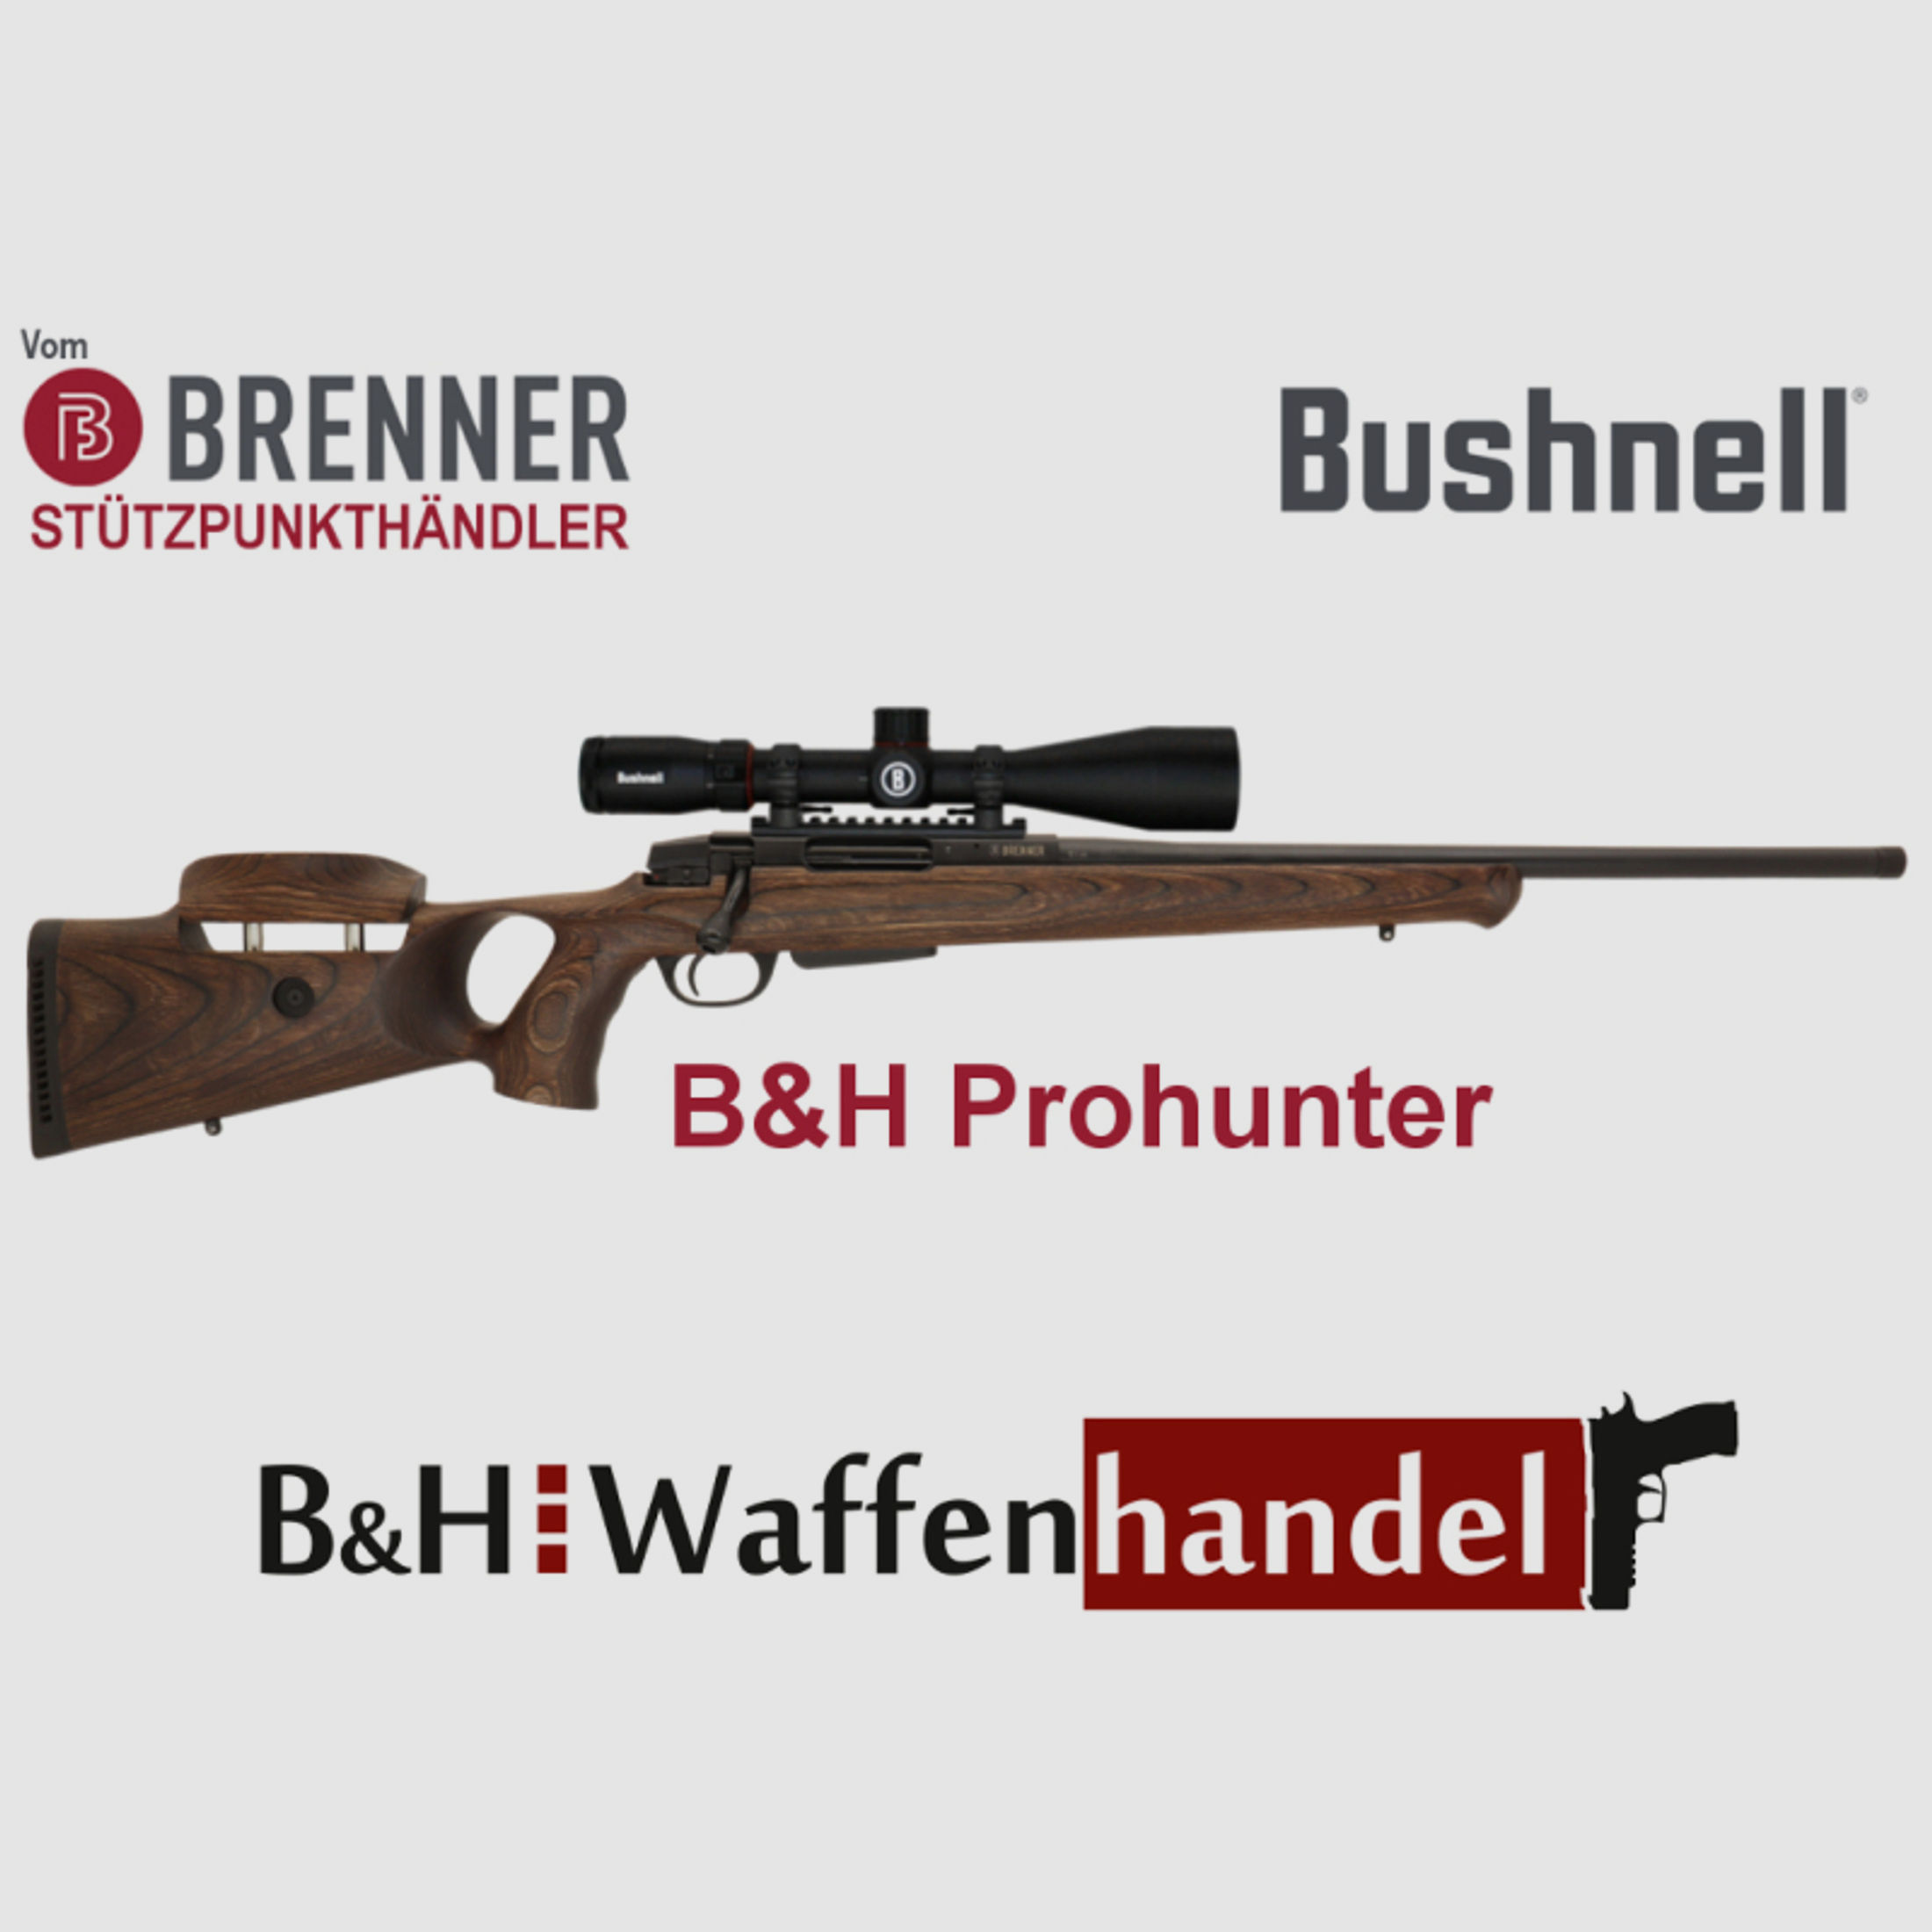 Komplettpaket: Brenner BR 20 B&H Prohunter Lochschaft mit Bushnell 2.5-15x50 fertig montiert